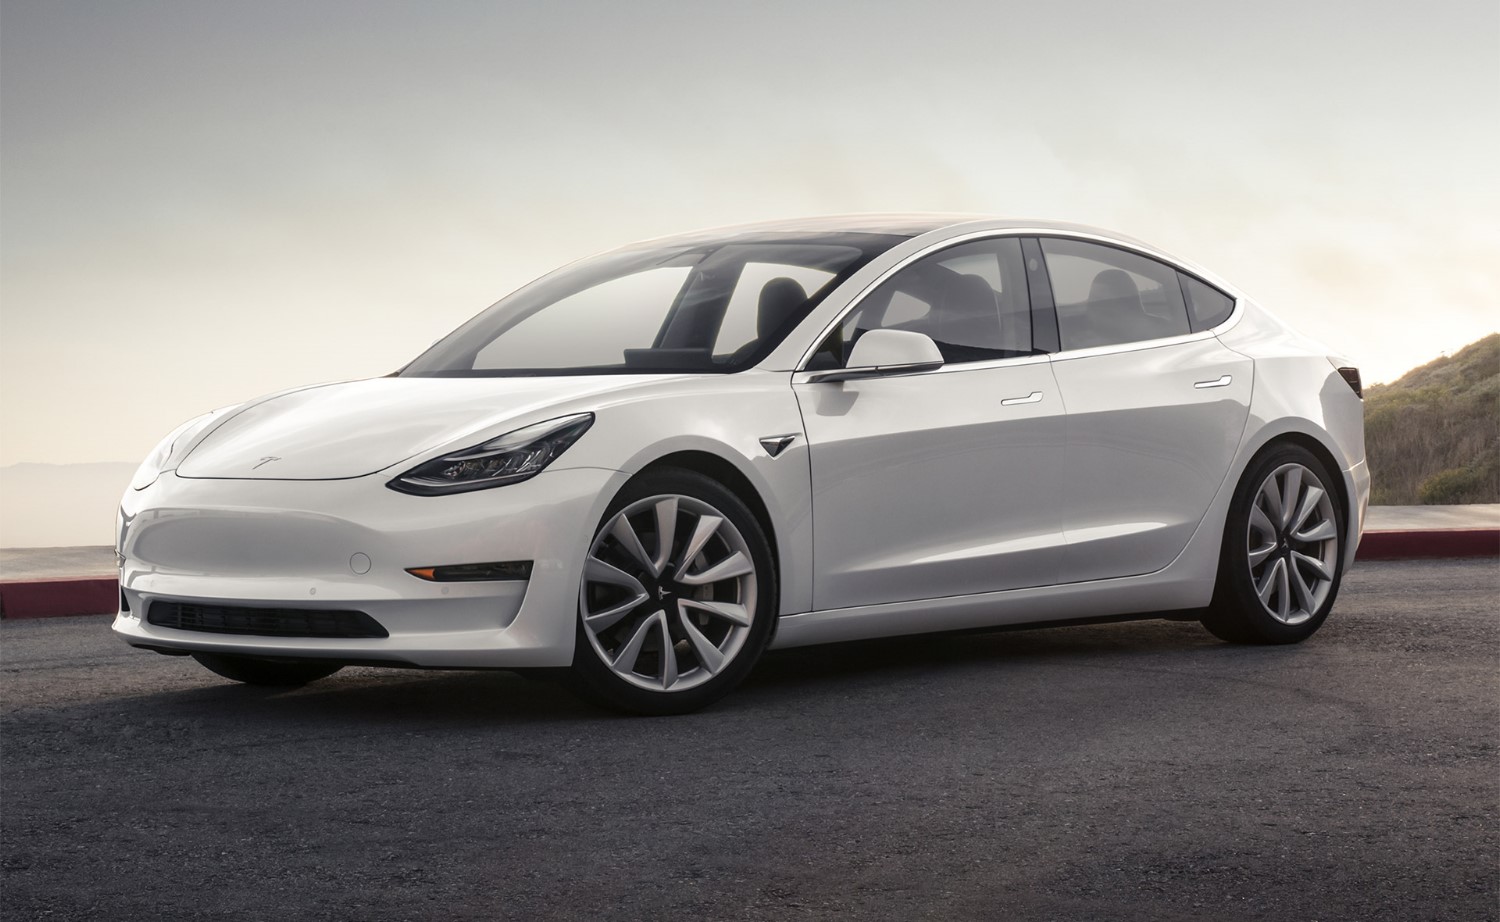 Tesla Model 3 selling well globally